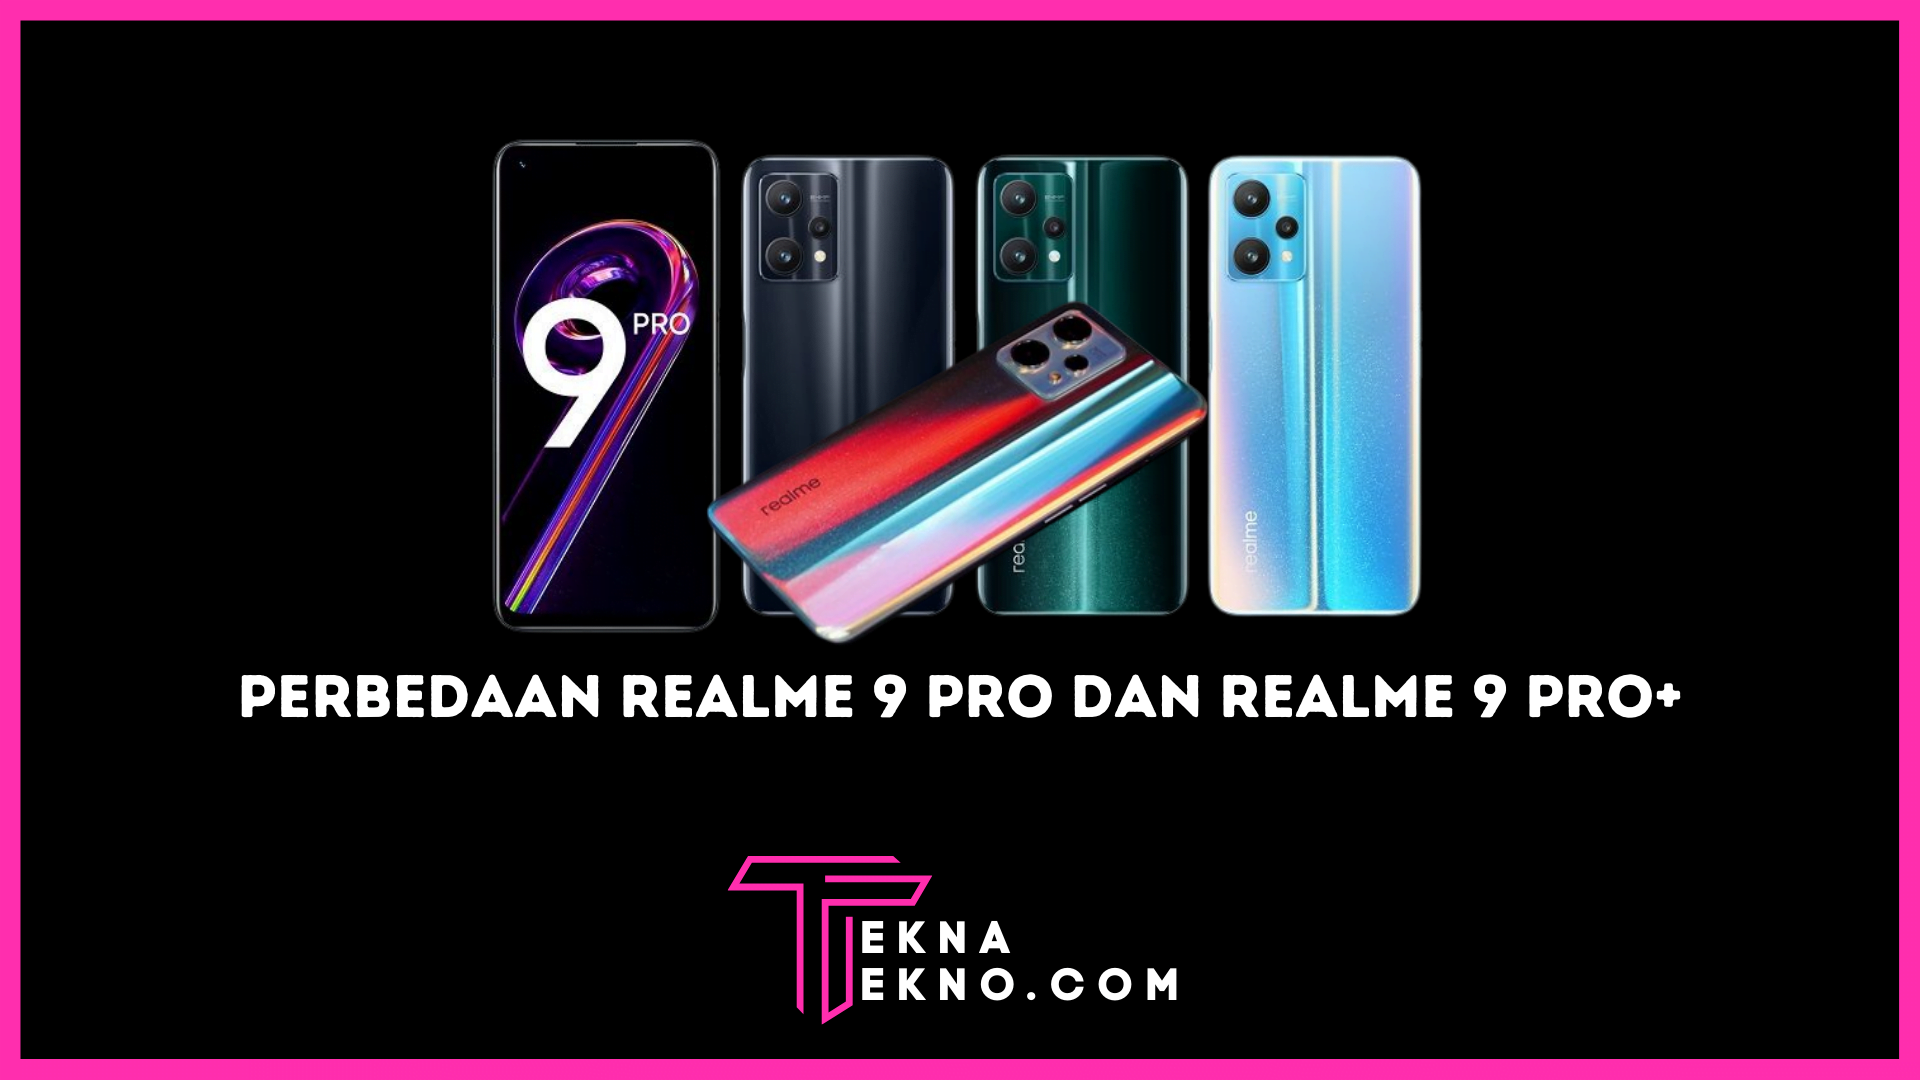 Perbedaan Spesifikasi Realme 9 Pro dan Realme 9 Pro+Perbedaan Spesifikasi Realme 9 Pro dan Realme 9 Pro+